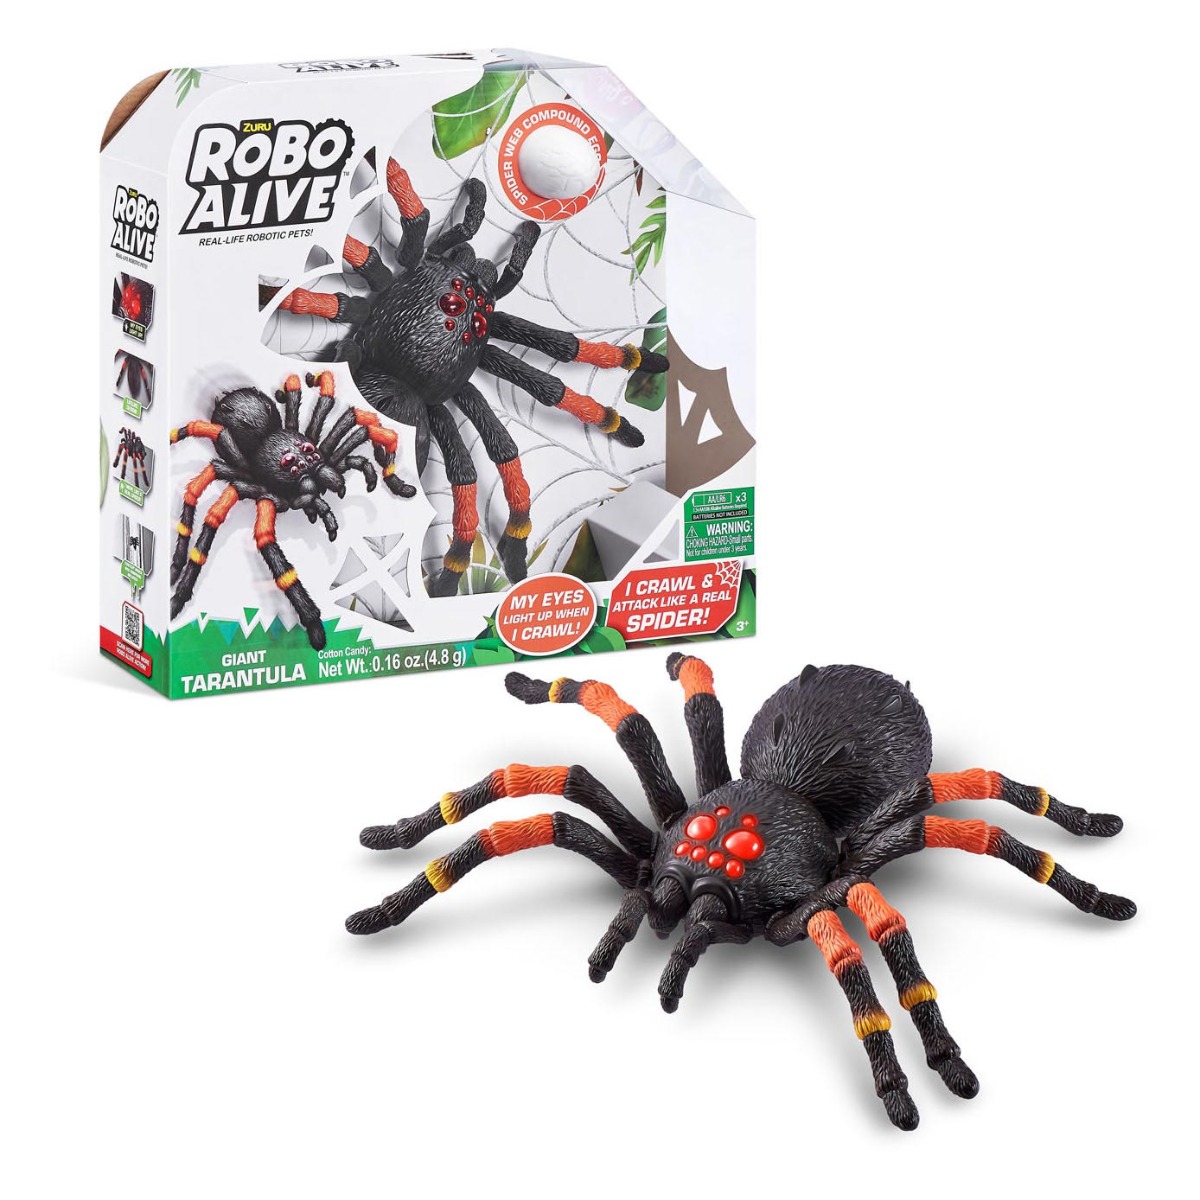 ZURU pavouk Robo Alive- Tarantule Akce pouze do vyprodání zásob!